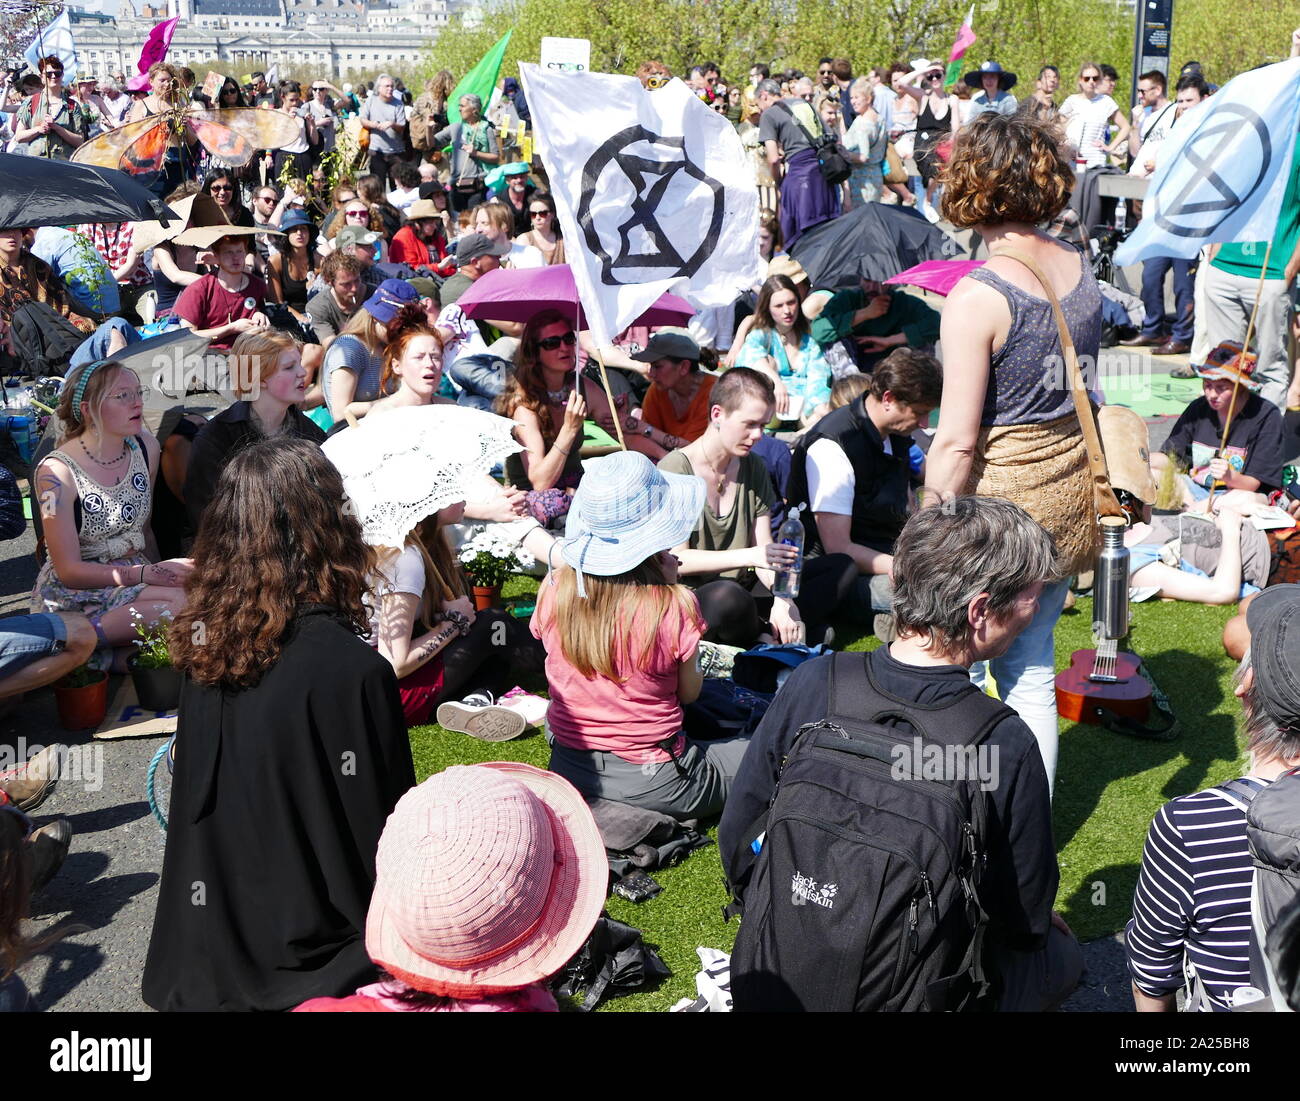 Rébellion d'extinction les changements climatiques manifestants protester de façon pacifique, par occcupying Waterloo Bridge, à Londres. 20 avril 2019 Banque D'Images